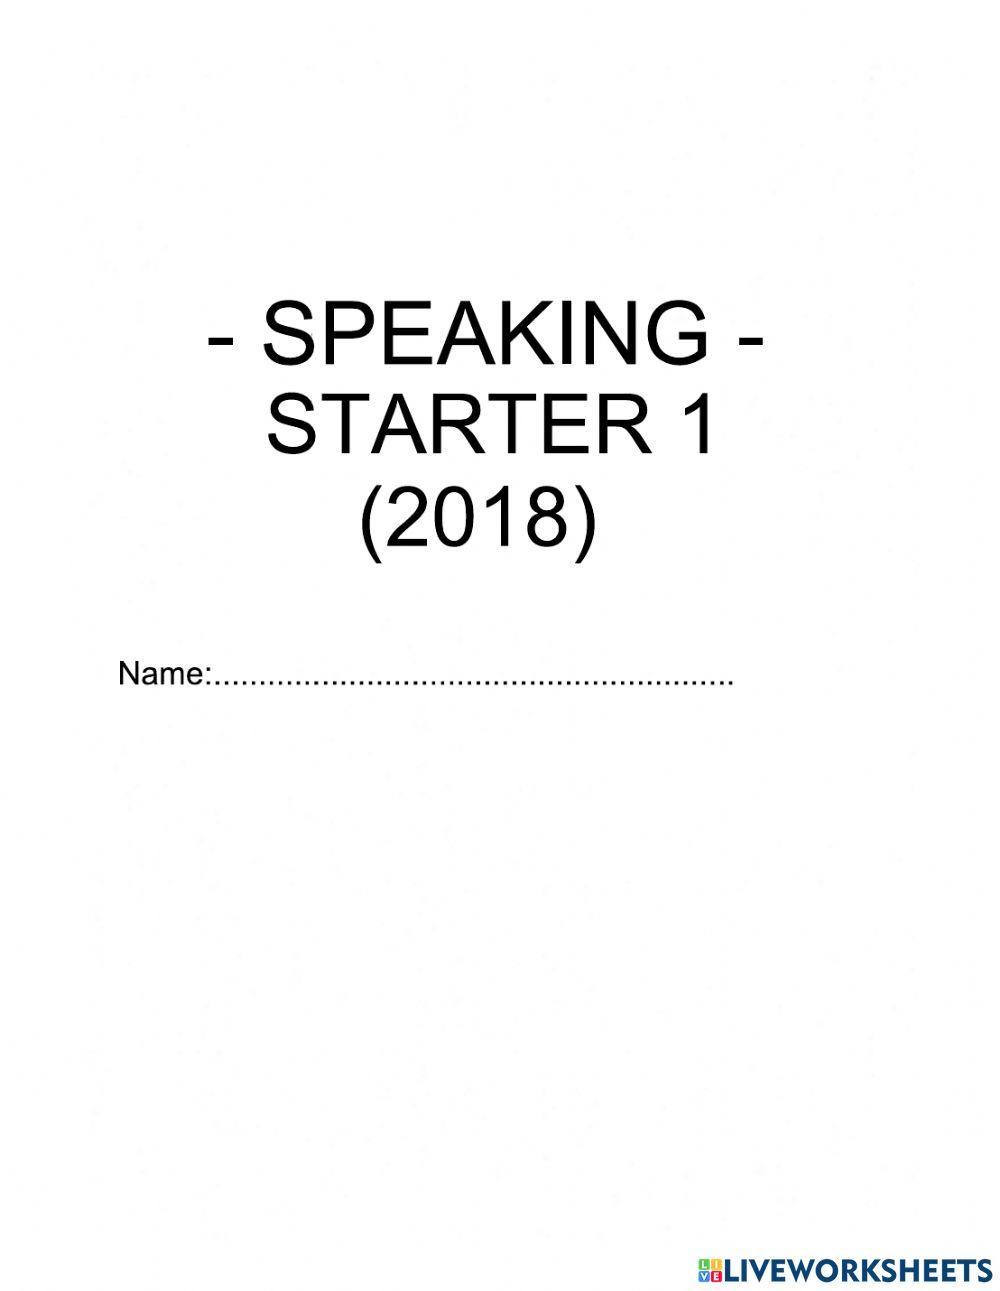 Starter 1 (2018) - Speaking